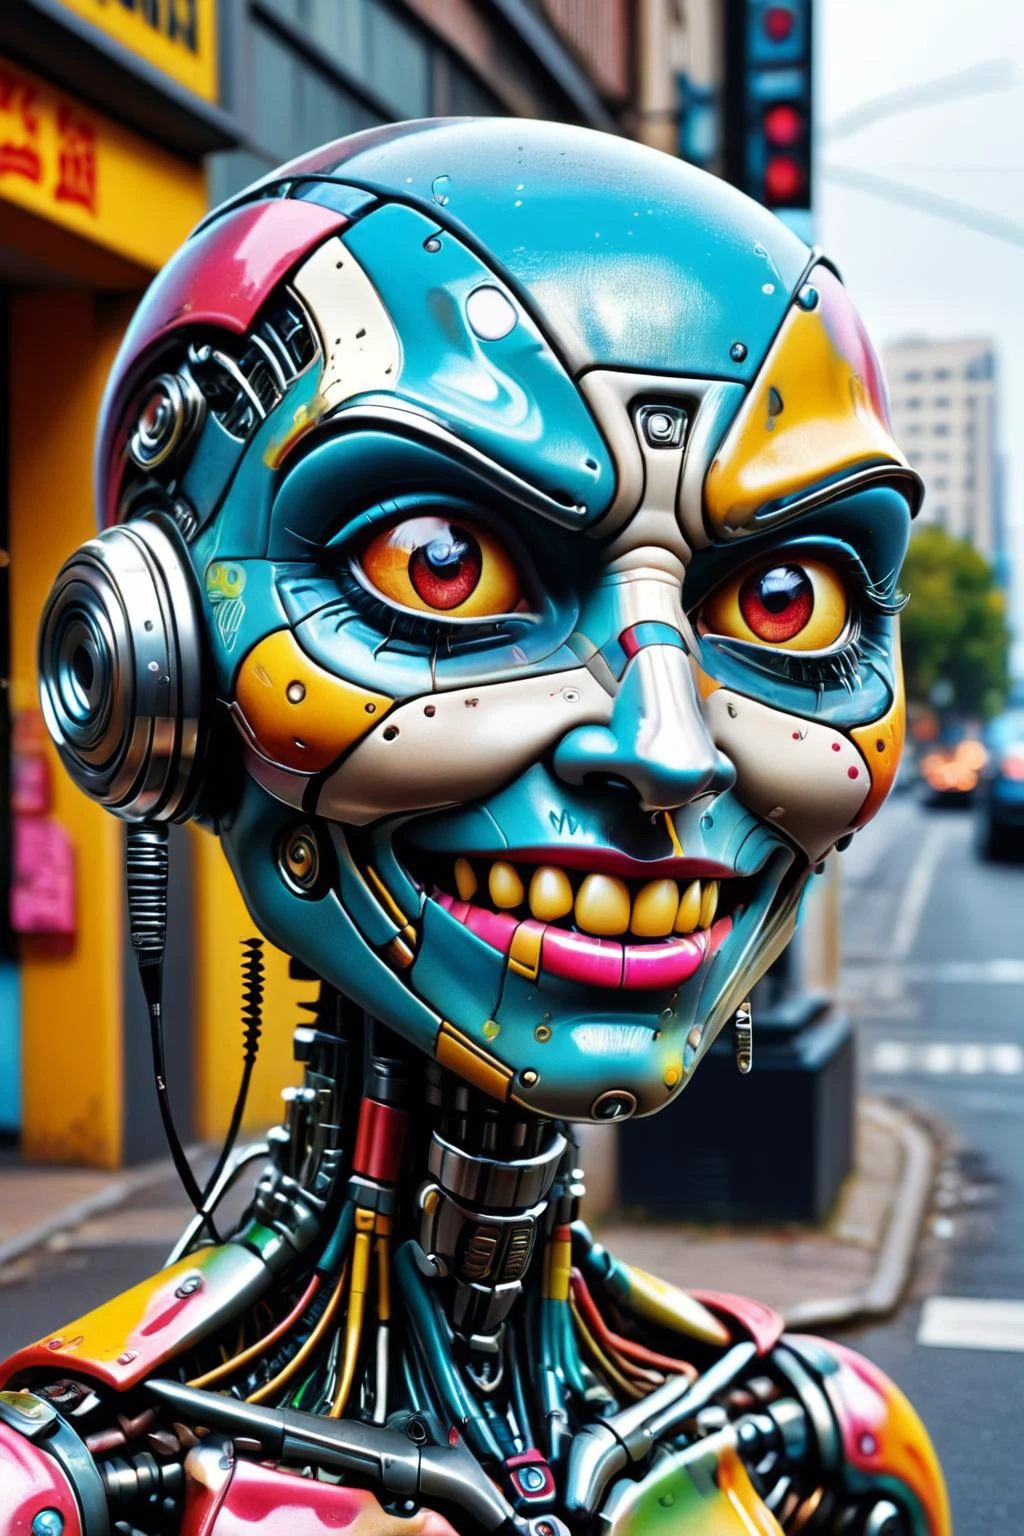 疯狂朋克 c1bo 机器人的原始照片 (调皮地眨眼, 厚脸皮的表情) 每个街角都有监控摄像头, 超级细节, 超现实主义, 绚丽夺目的鲜艳油漆  ,  ais-colorfulplastic